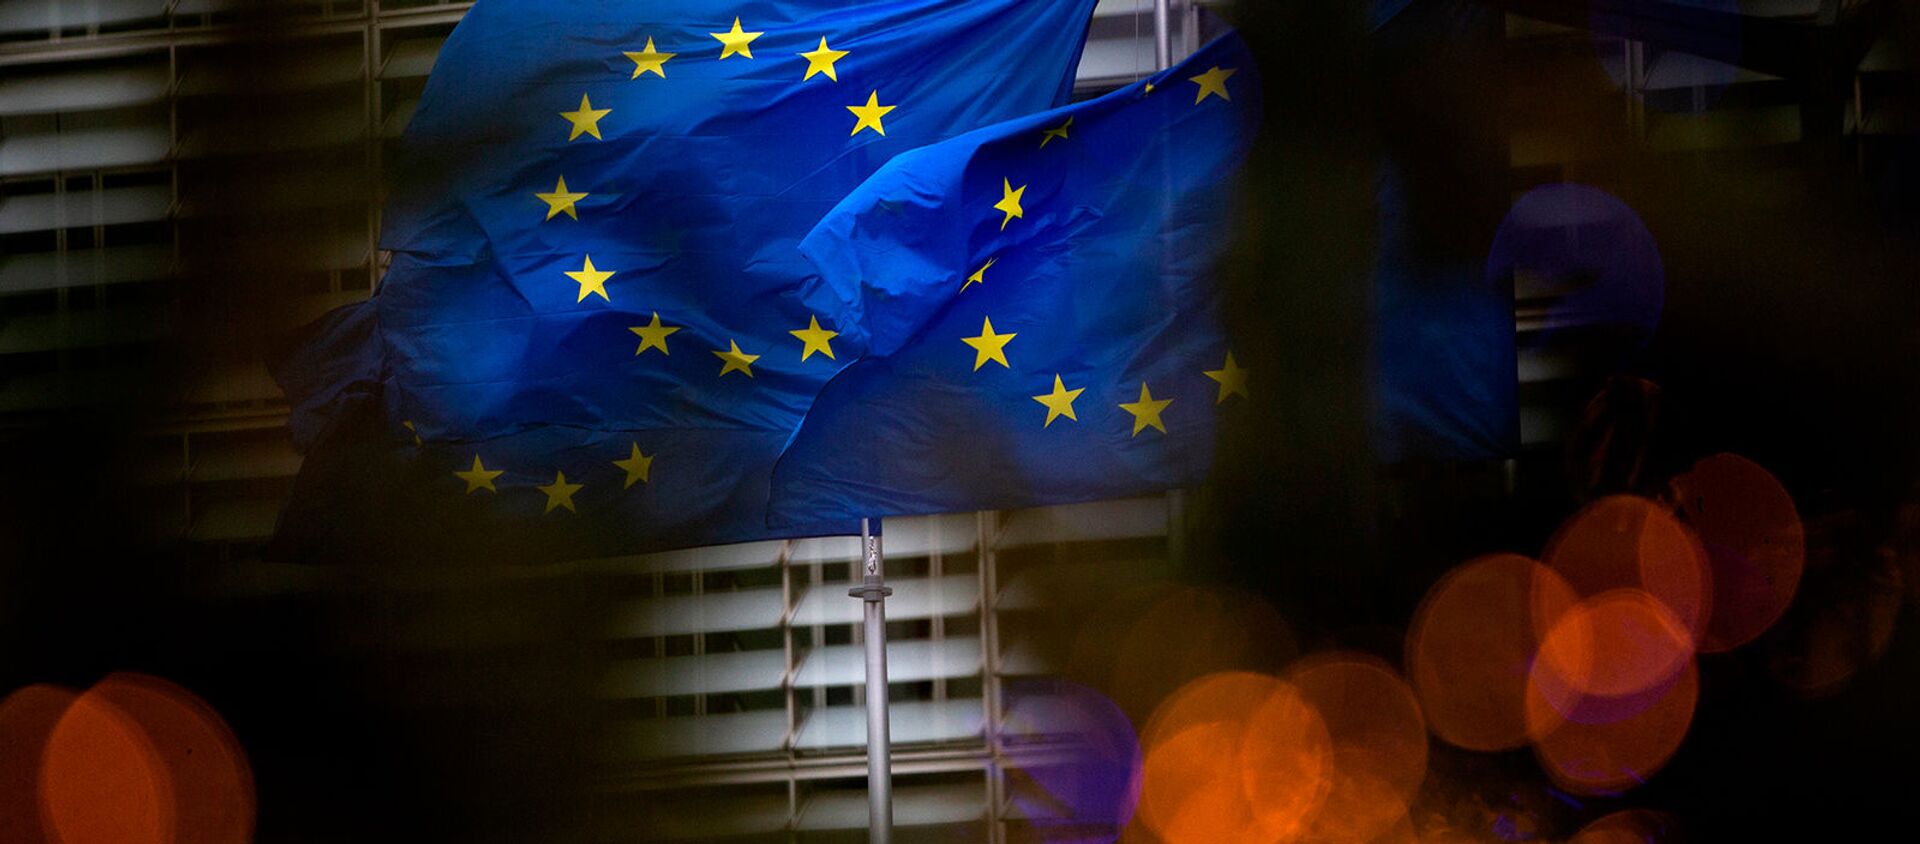 Флаги Европейского союза перед штаб-квартирой ЕС в Брюсселе - Sputnik Грузия, 1920, 10.02.2021